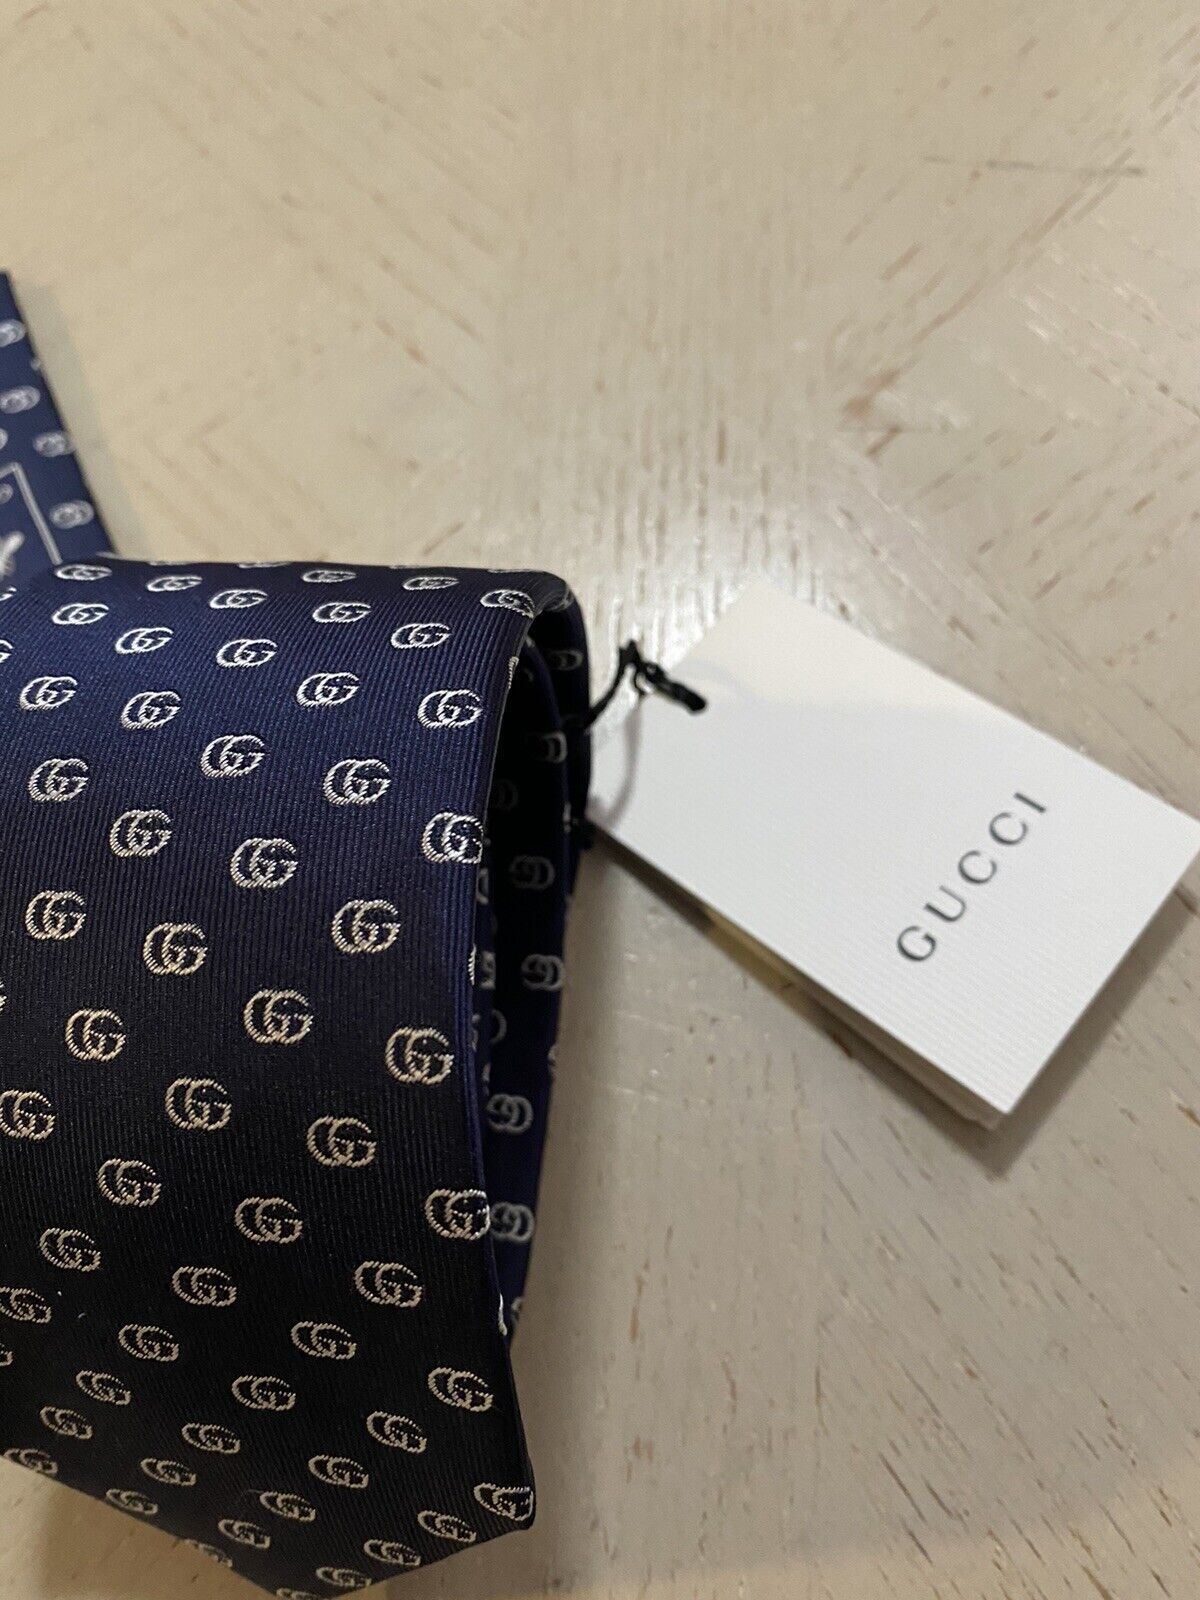 Neues Gucci-Herren-GG-Monogramm-Seidenhalsband DK-Blau, hergestellt in Italien